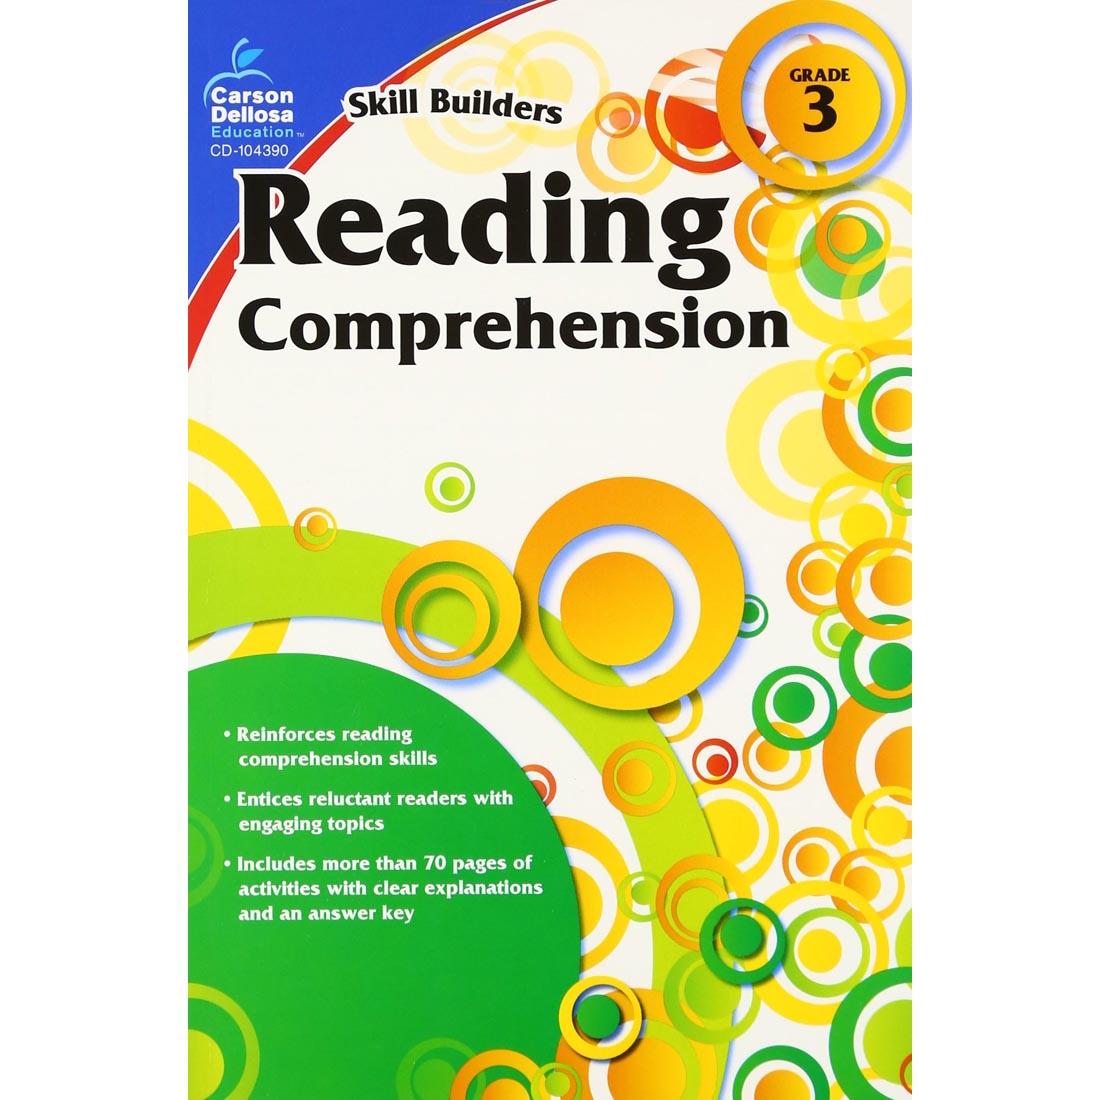 Reading Comprehension Skill Builders by Carson Dellosa Grade 3